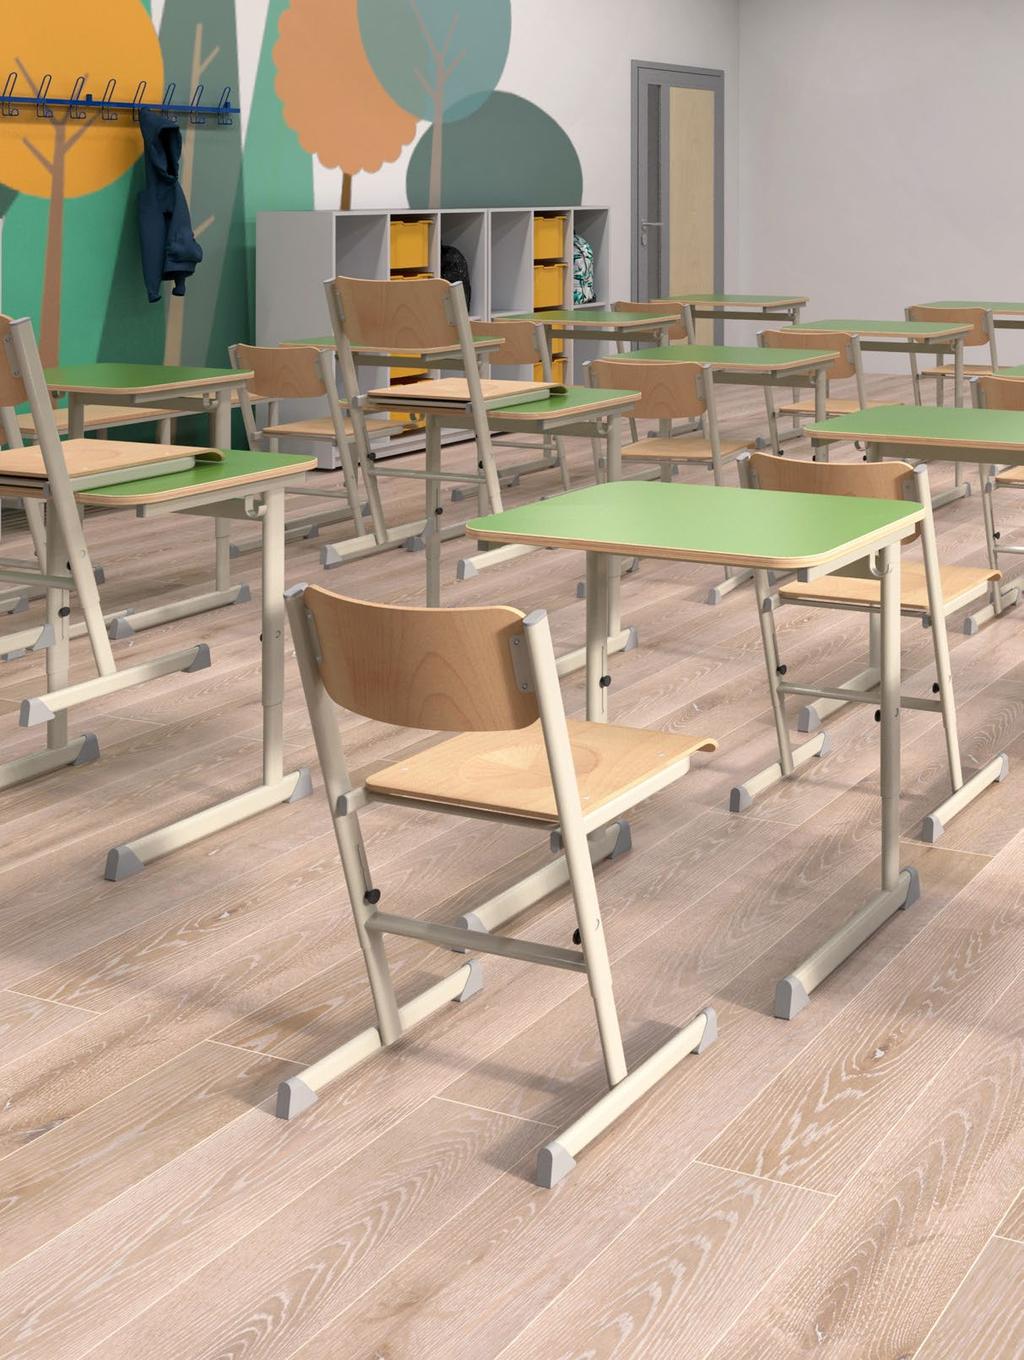 2018-as fejlesztésű tanulói és tanári bútort is tartalmazó termékcsalád. Nagy előnye, hogy az asztalok és székek magassága kézzel, szerszám nélkül is könnyen állítható!